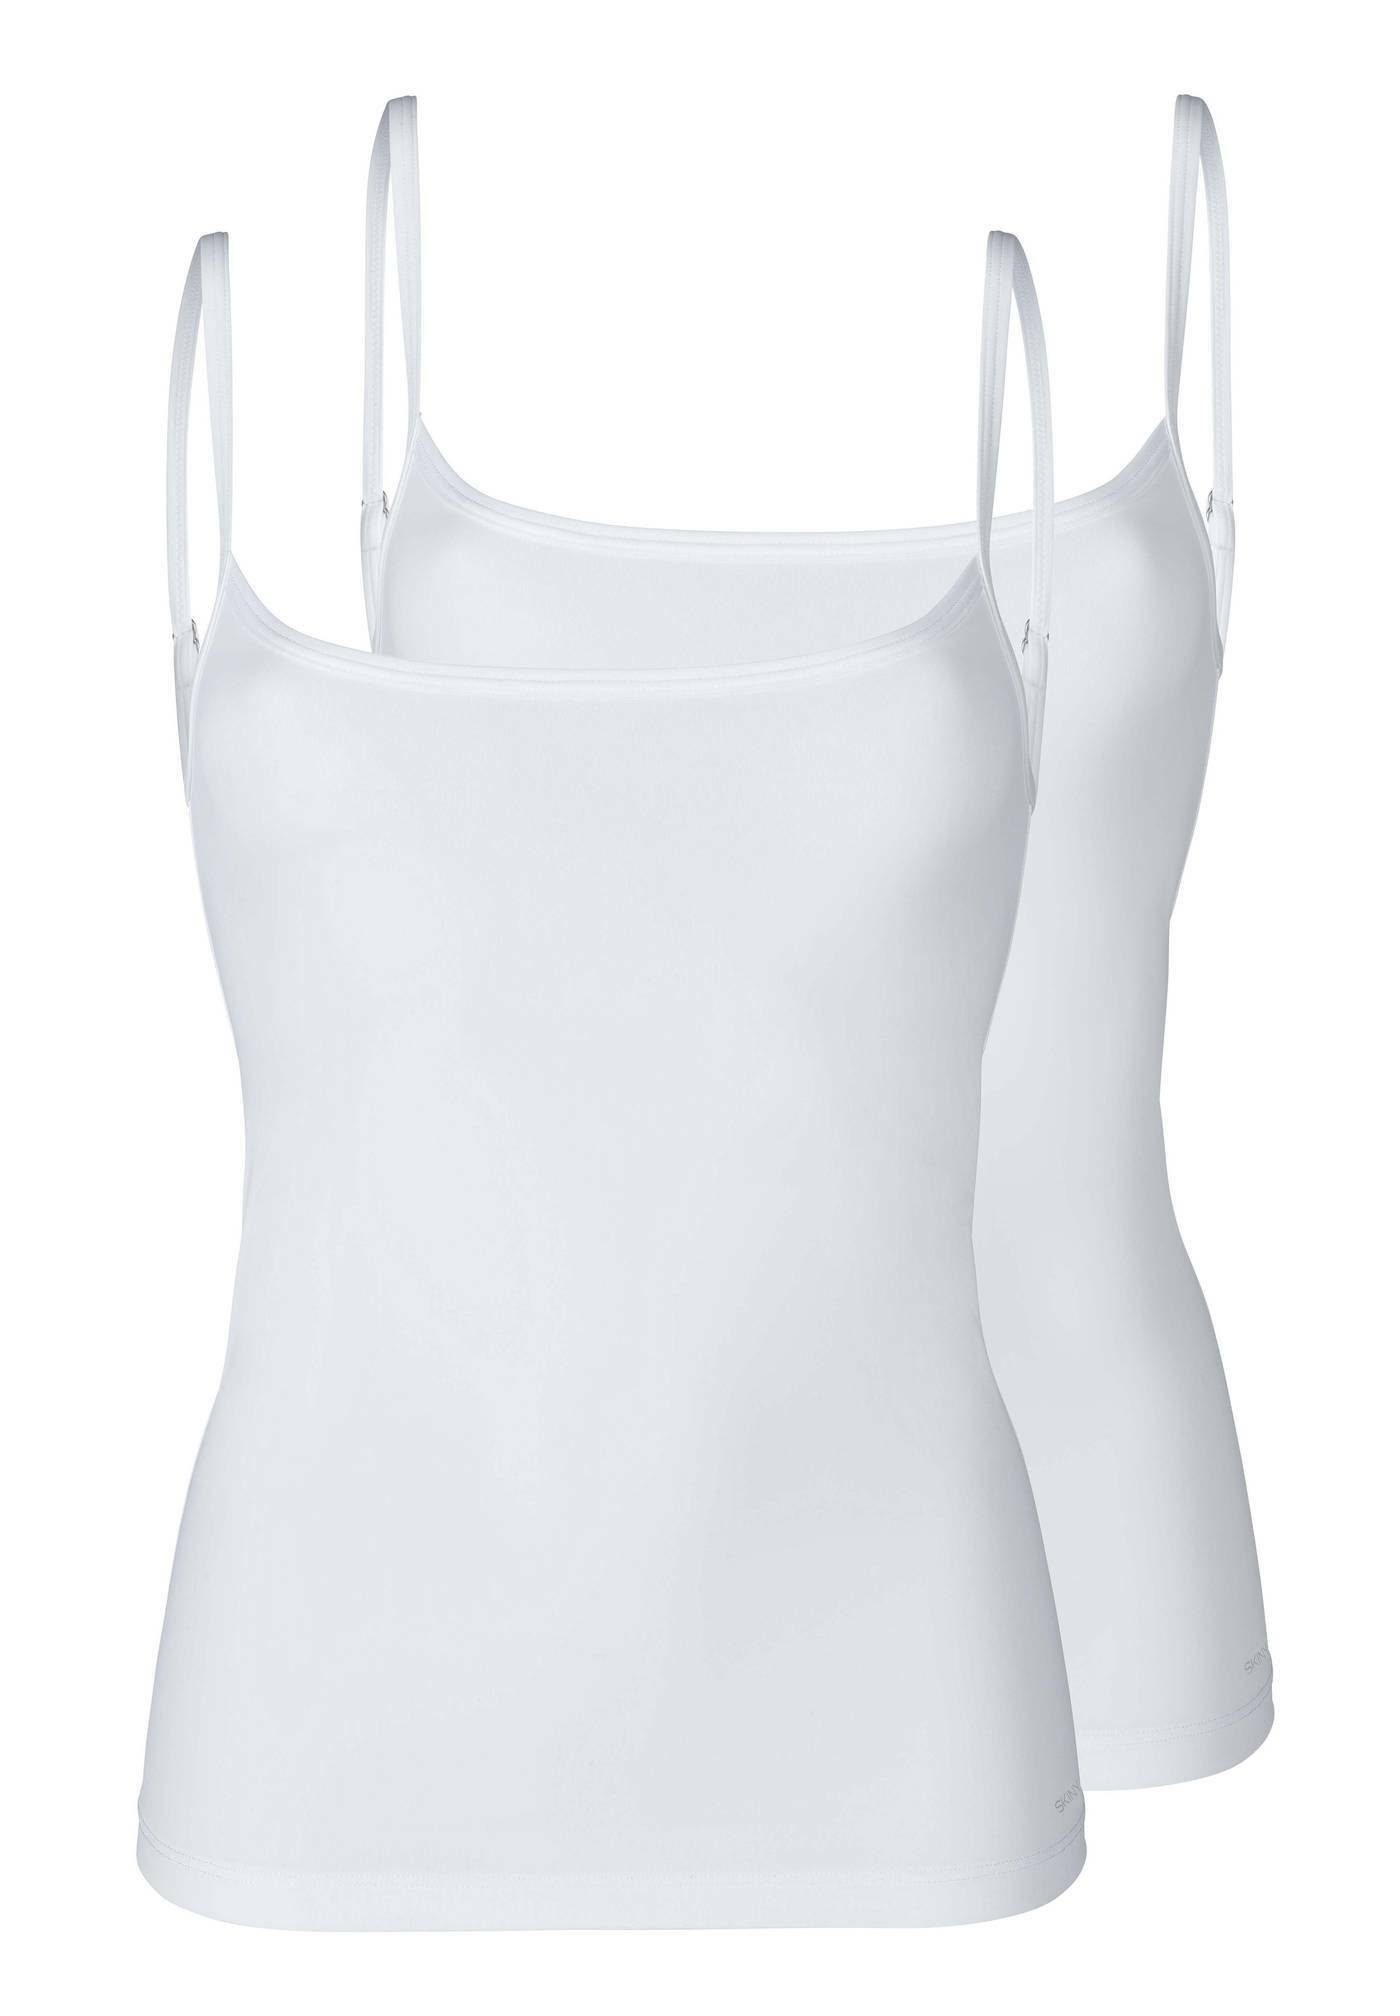 Skiny Damen Unterhemden » Unterziehshirts online kaufen | OTTO